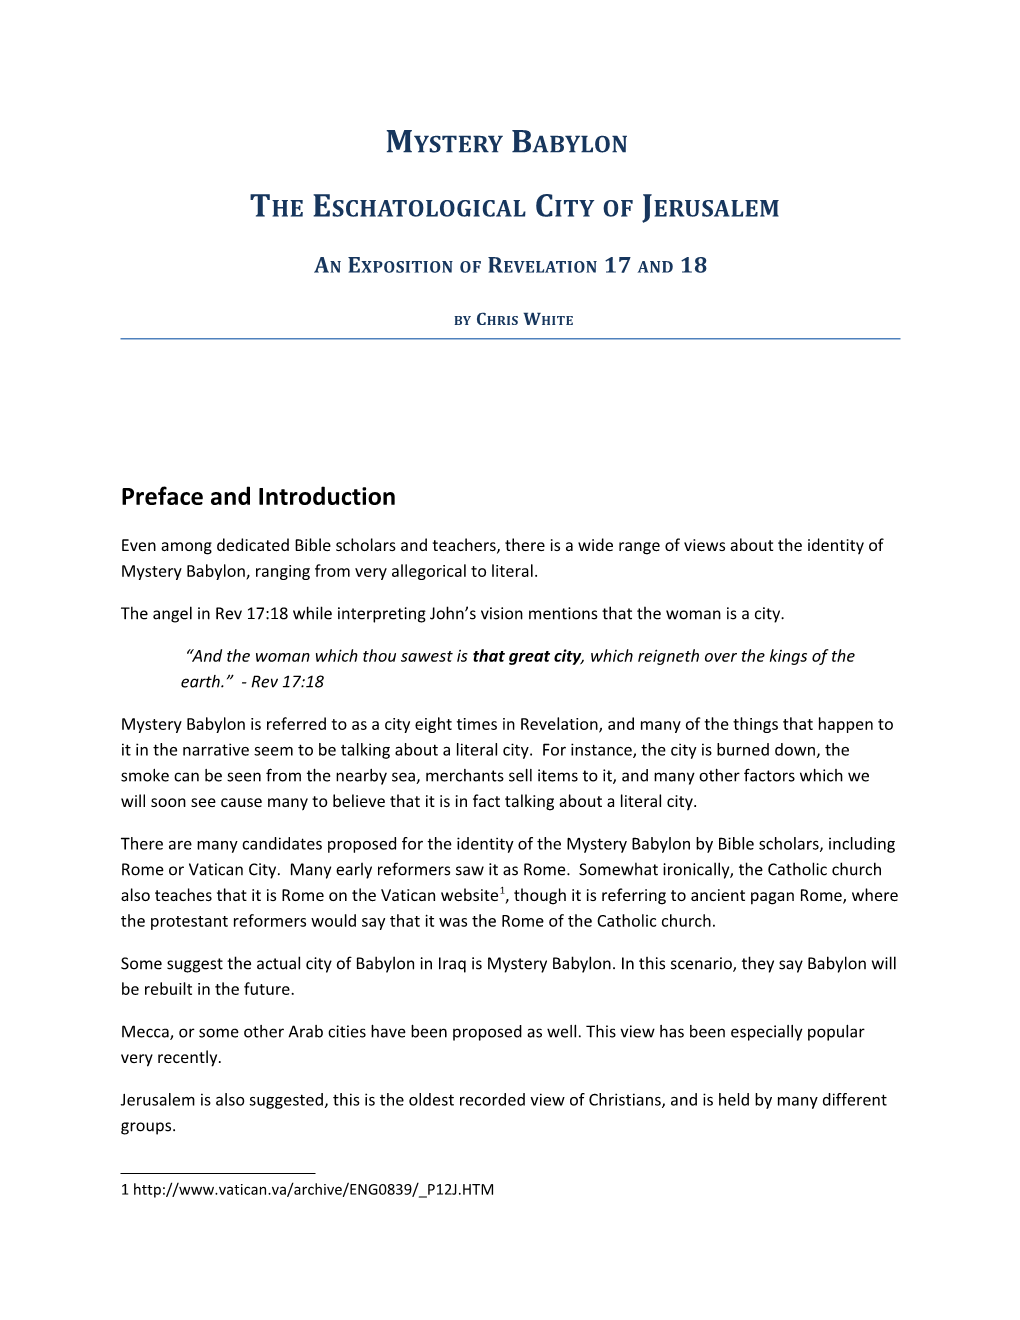 The Eschatological City of Jerusalem